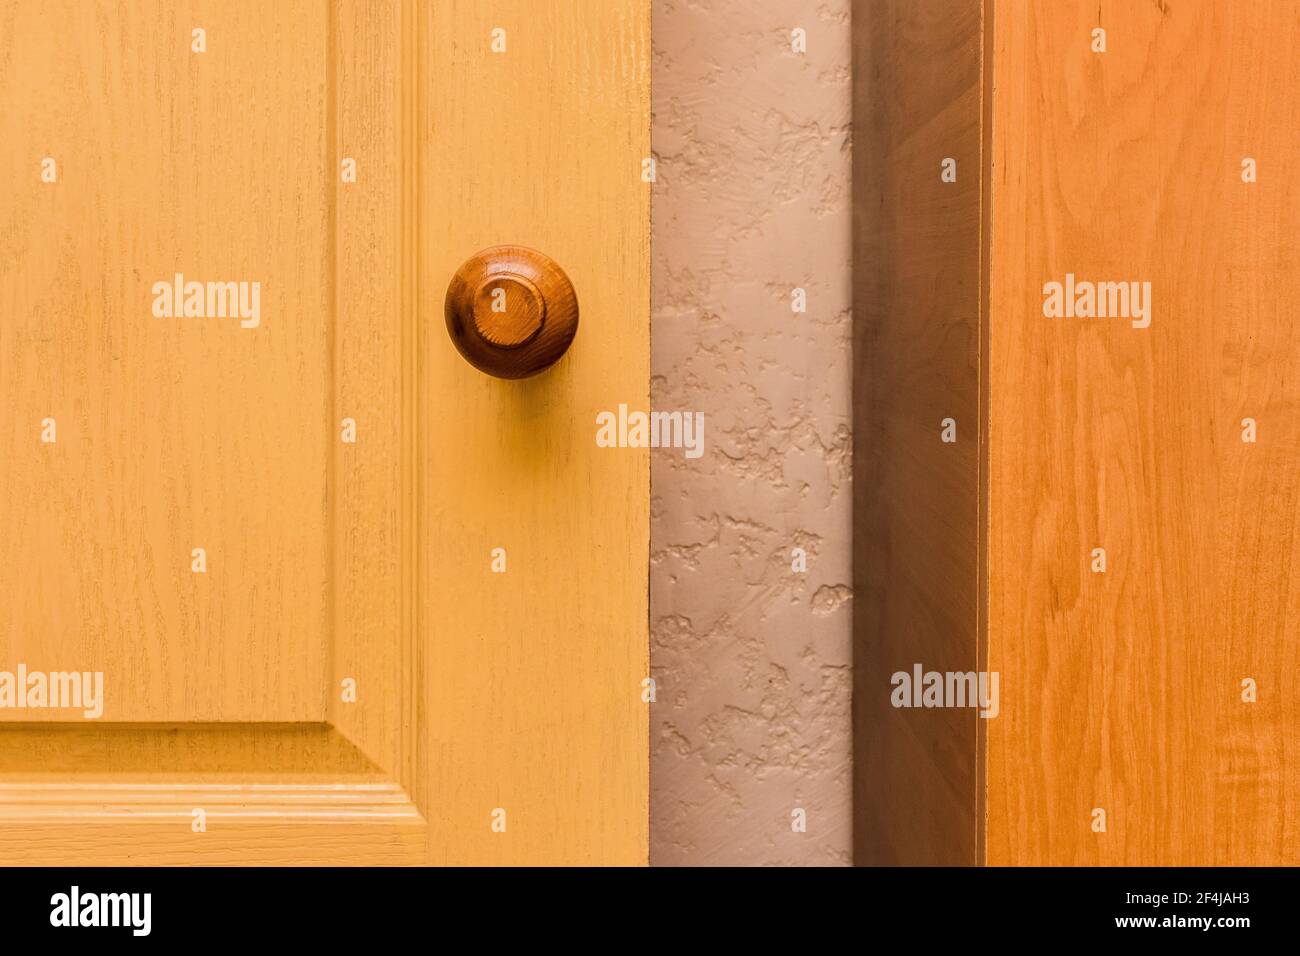 Yellow wooden door, element of interior room background. Stock Photo